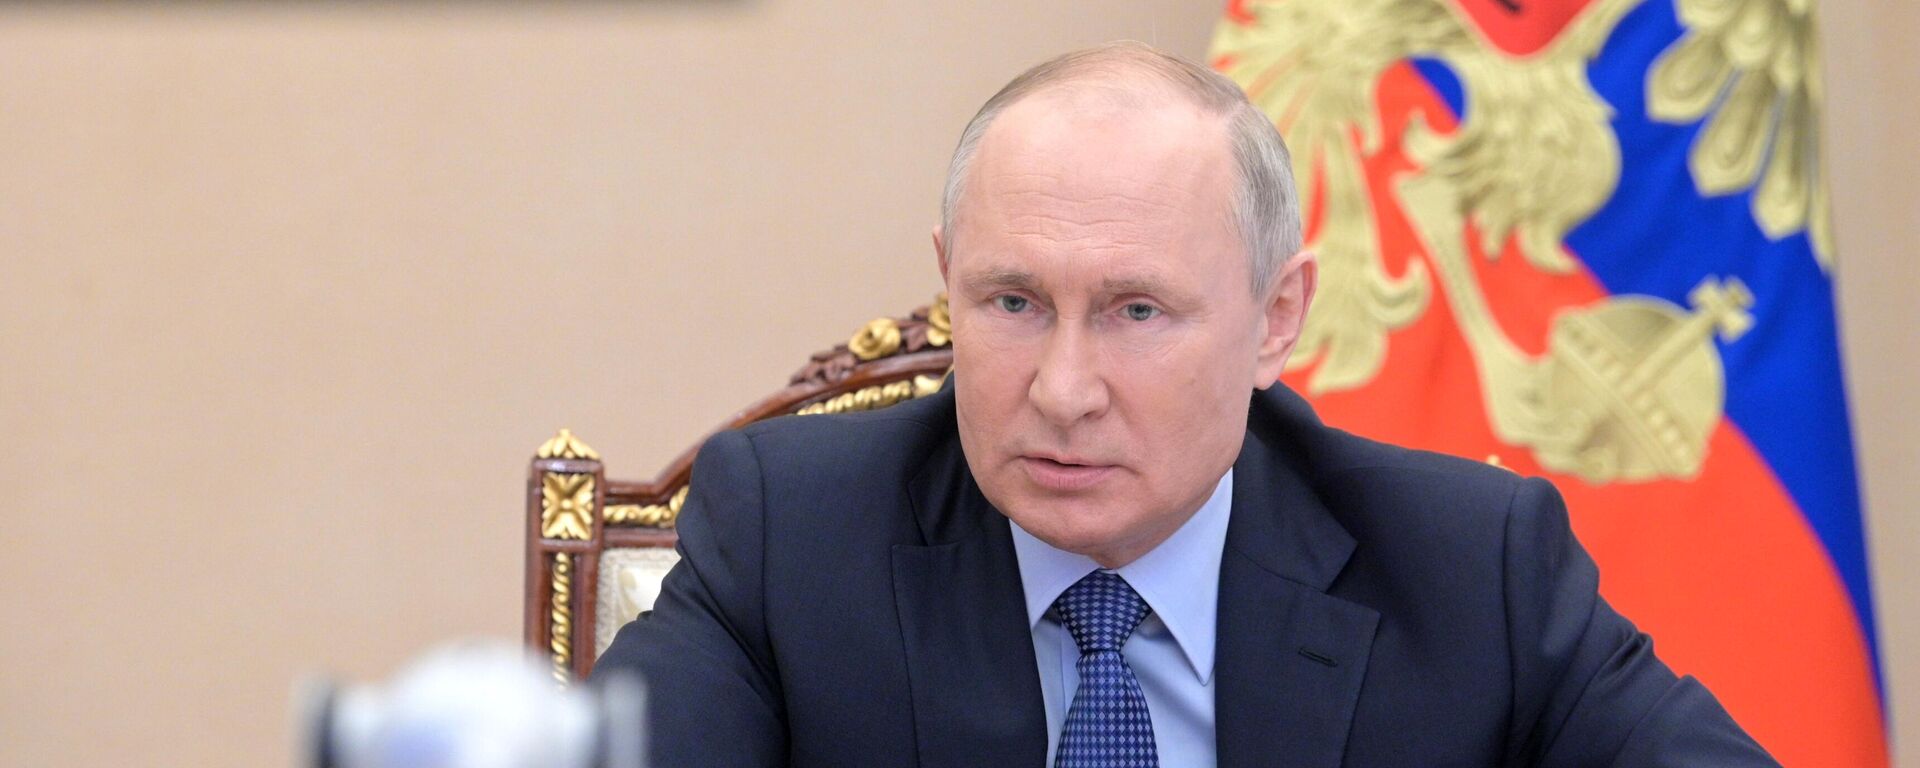 Vladímir Putin, presidente ruso - Sputnik Mundo, 1920, 01.07.2021